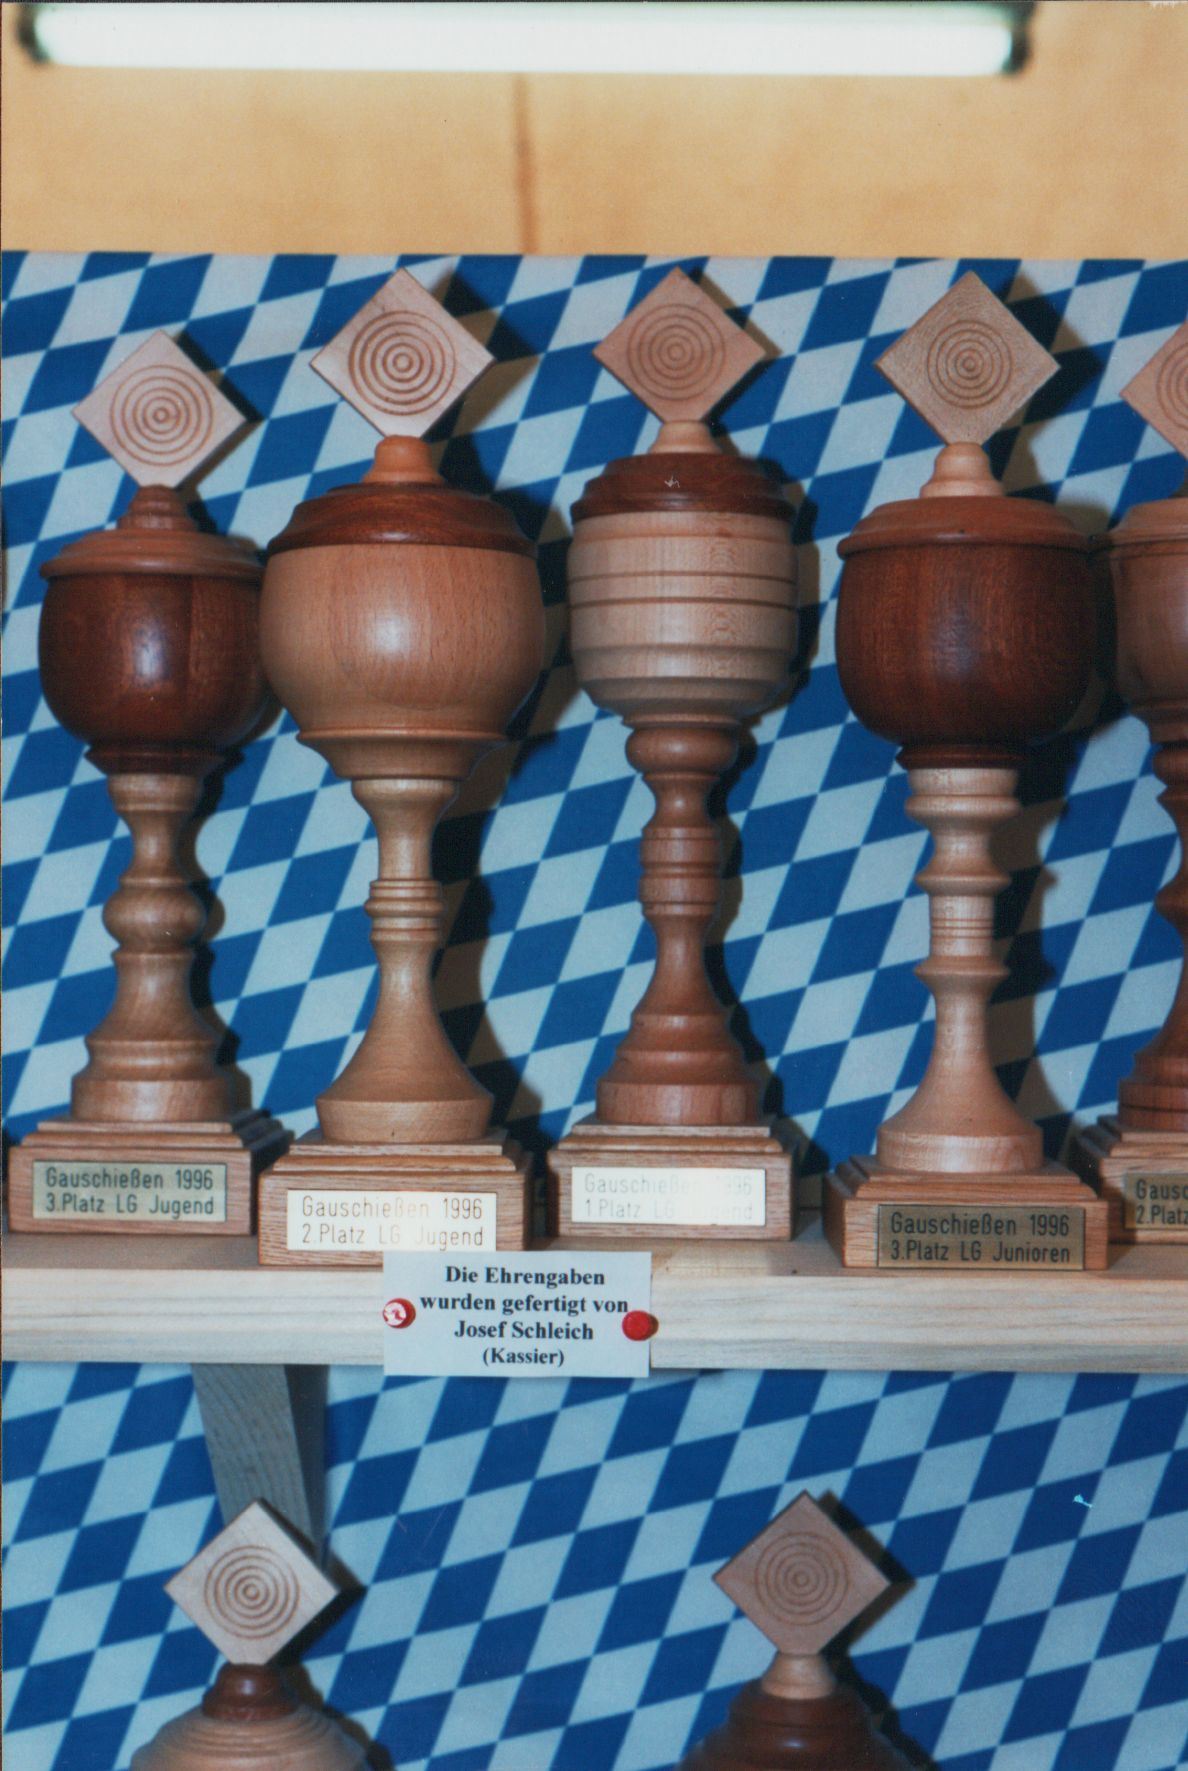 1996 Gauschiessen Holzpokale